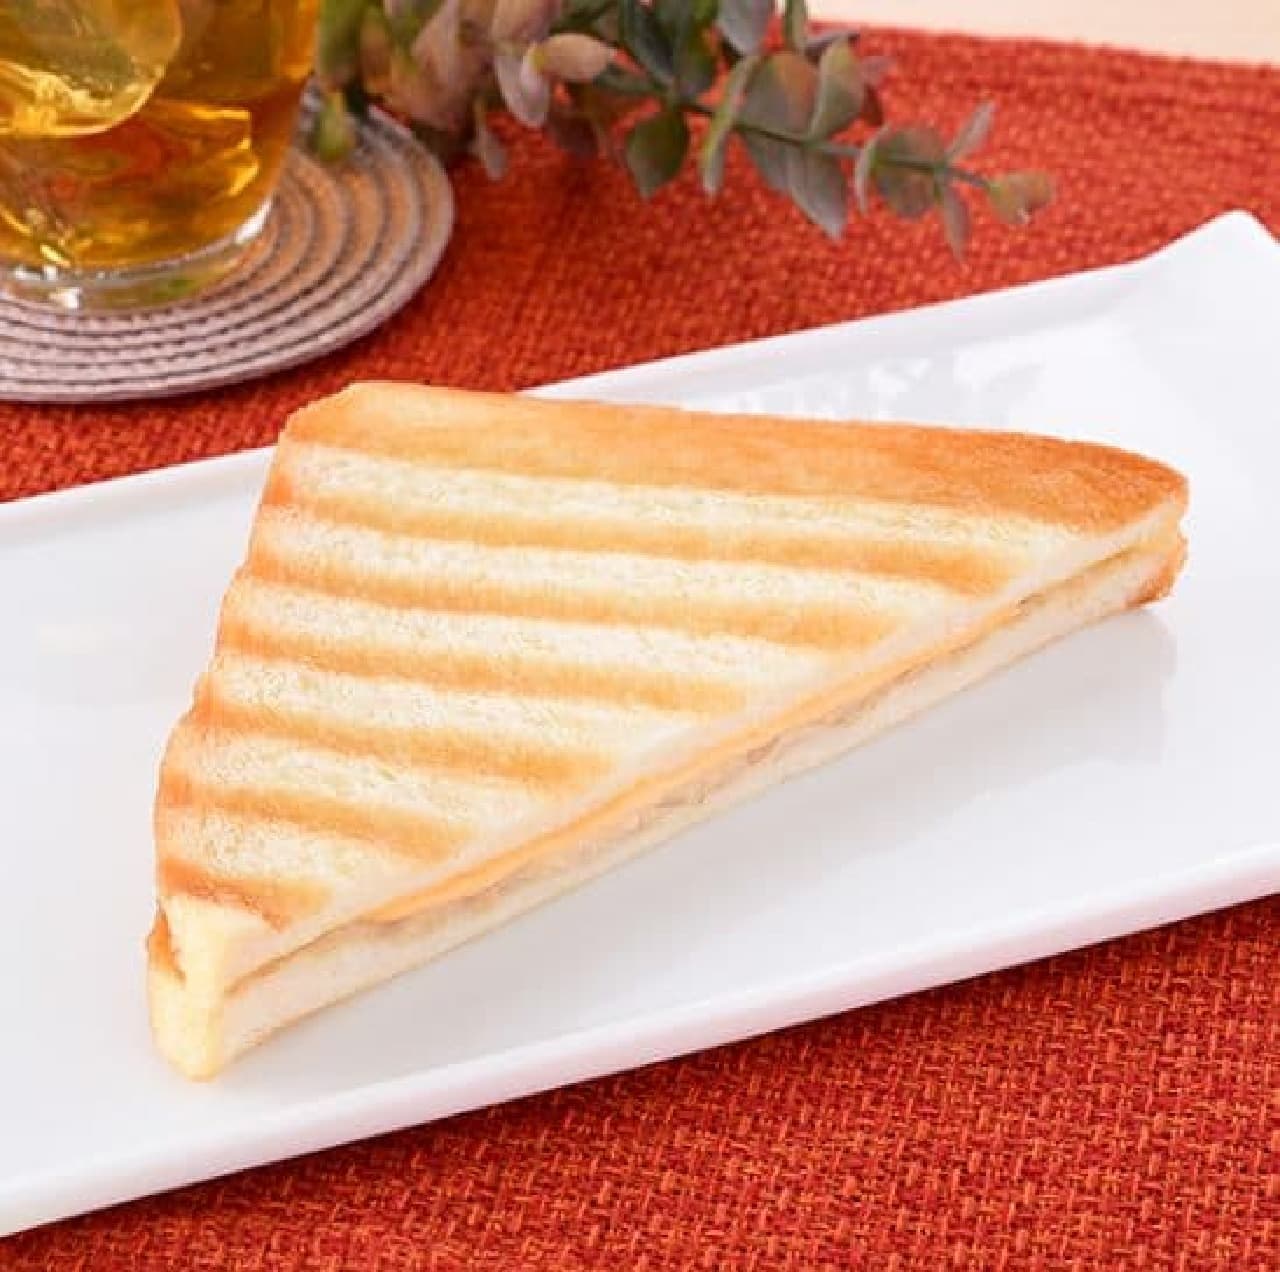 FamilyMart "Hot Sandwich (Tuna & Cheddar Cheese)"